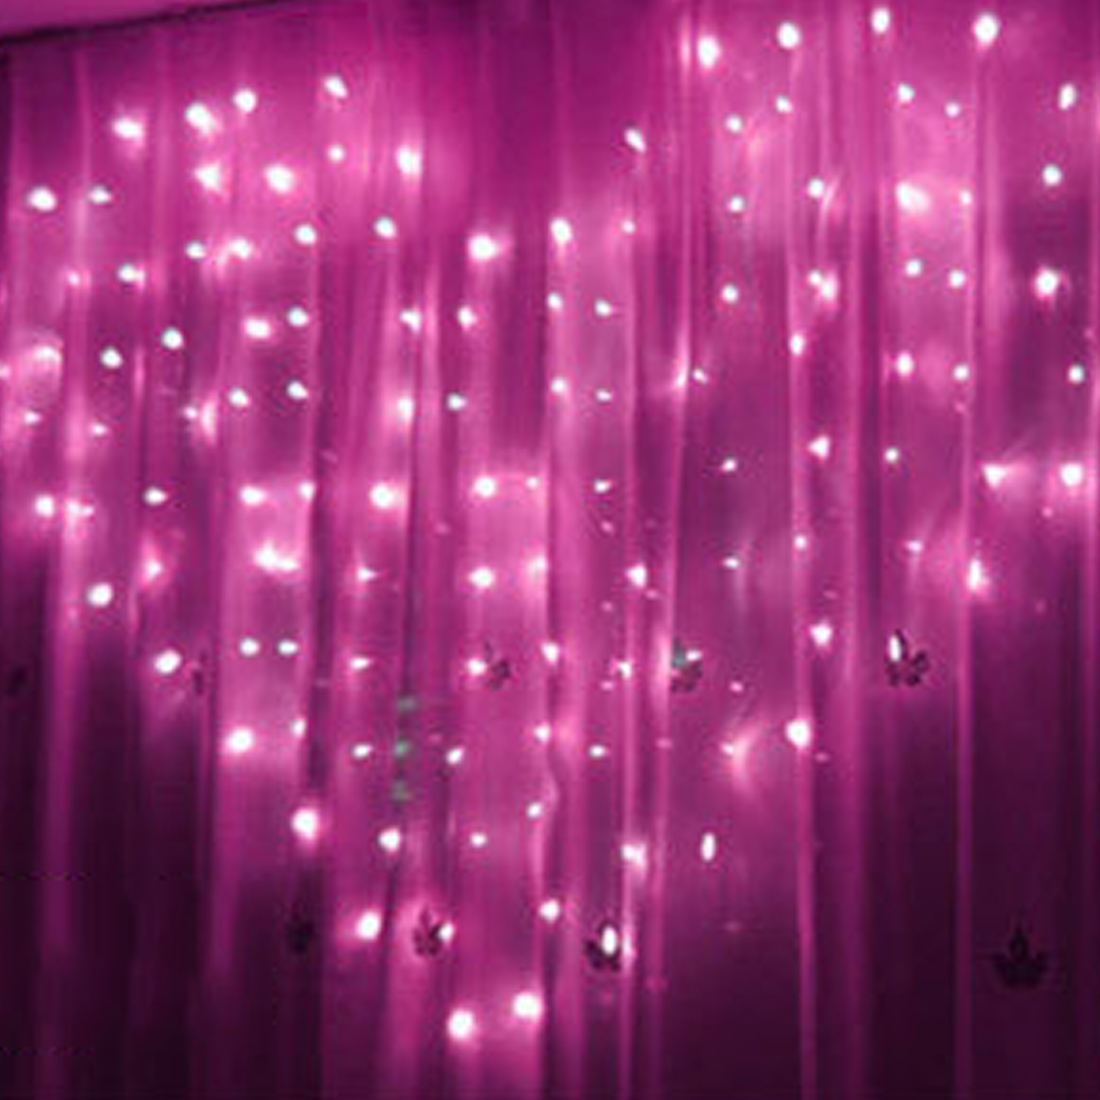 Pink lights